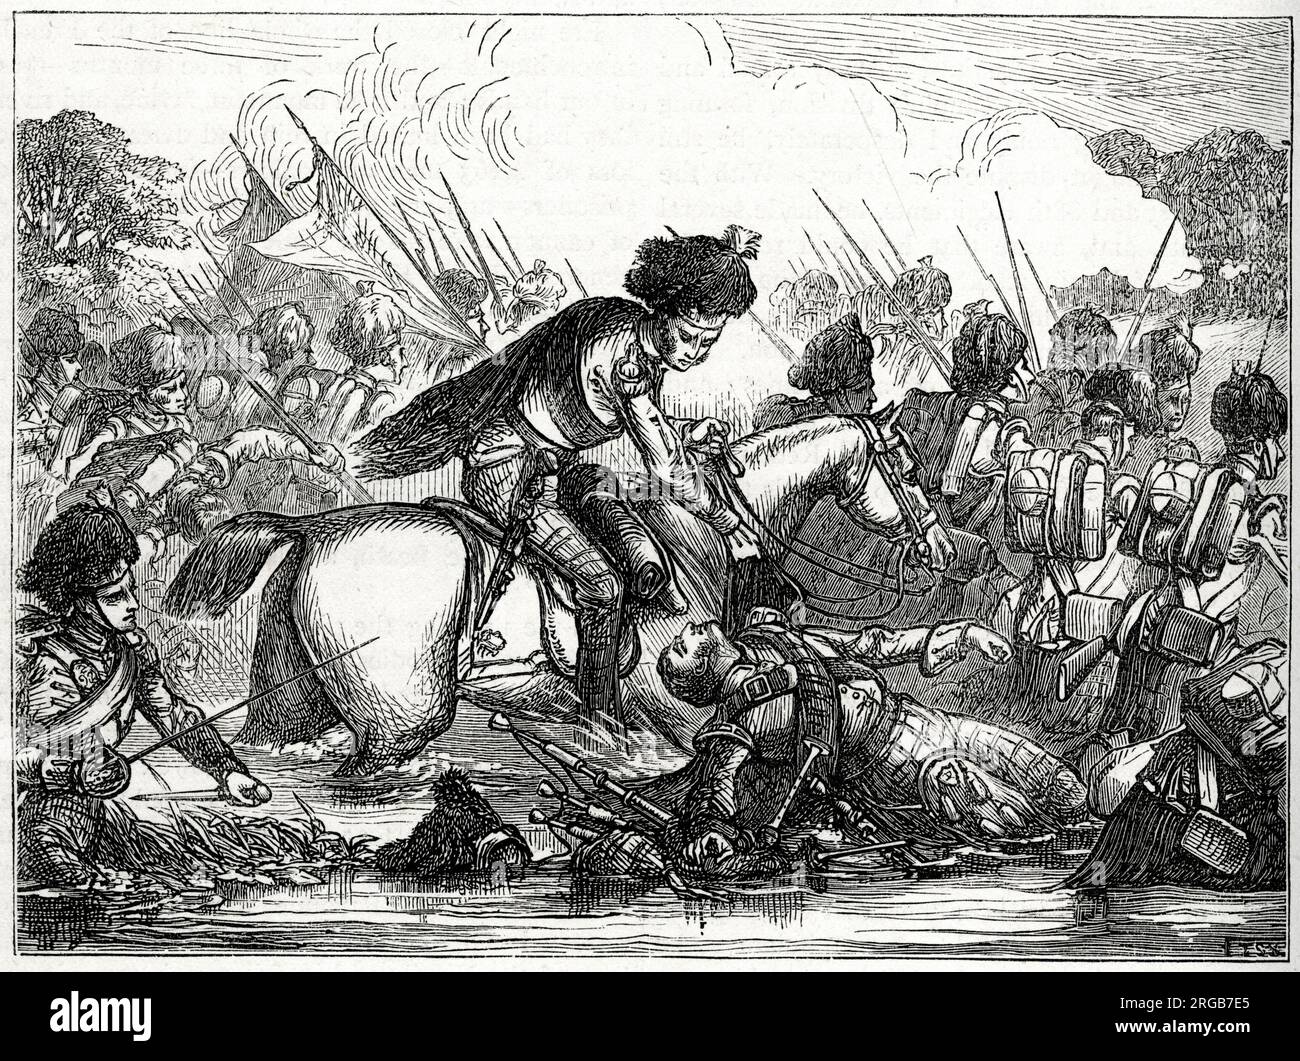 Colonel John Cameron avec les 92nd Highlanders traversant la Nive près de Bayonne, au sud-ouest de la France, le 9 décembre 1813, dans le cadre de la guerre de la Sixième Coalition (1813-1814). La pipette préférée de Cameron a été tiré au moment où ils traversaient et a été emportée dans l'eau. Banque D'Images